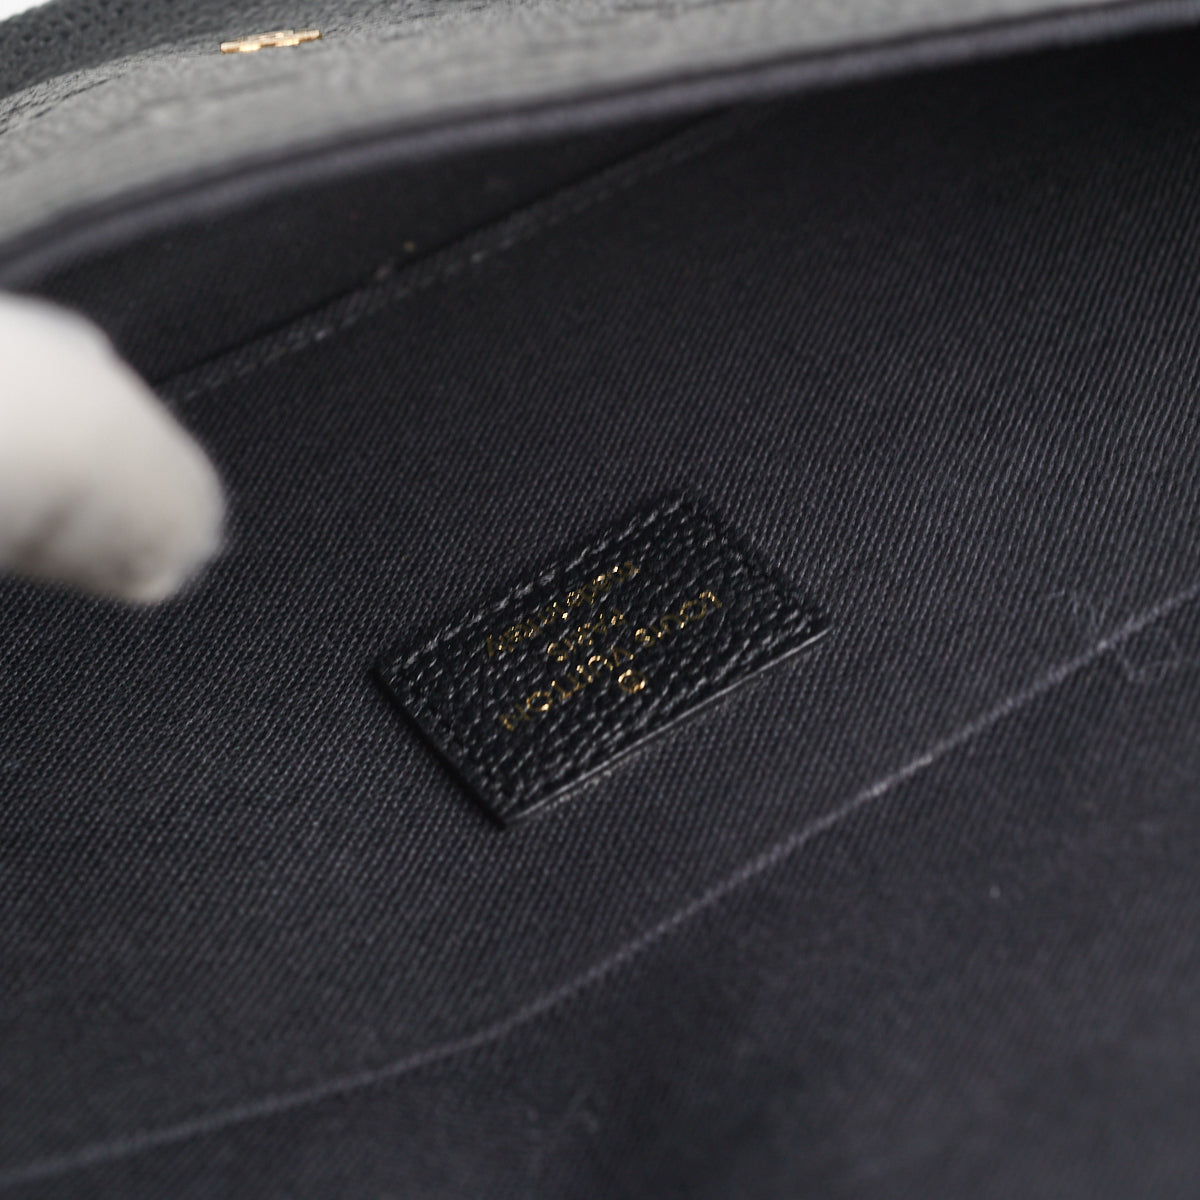 Louis Vuitton Black Monogram Empreinte Felicie Pochette, myGemma, SG